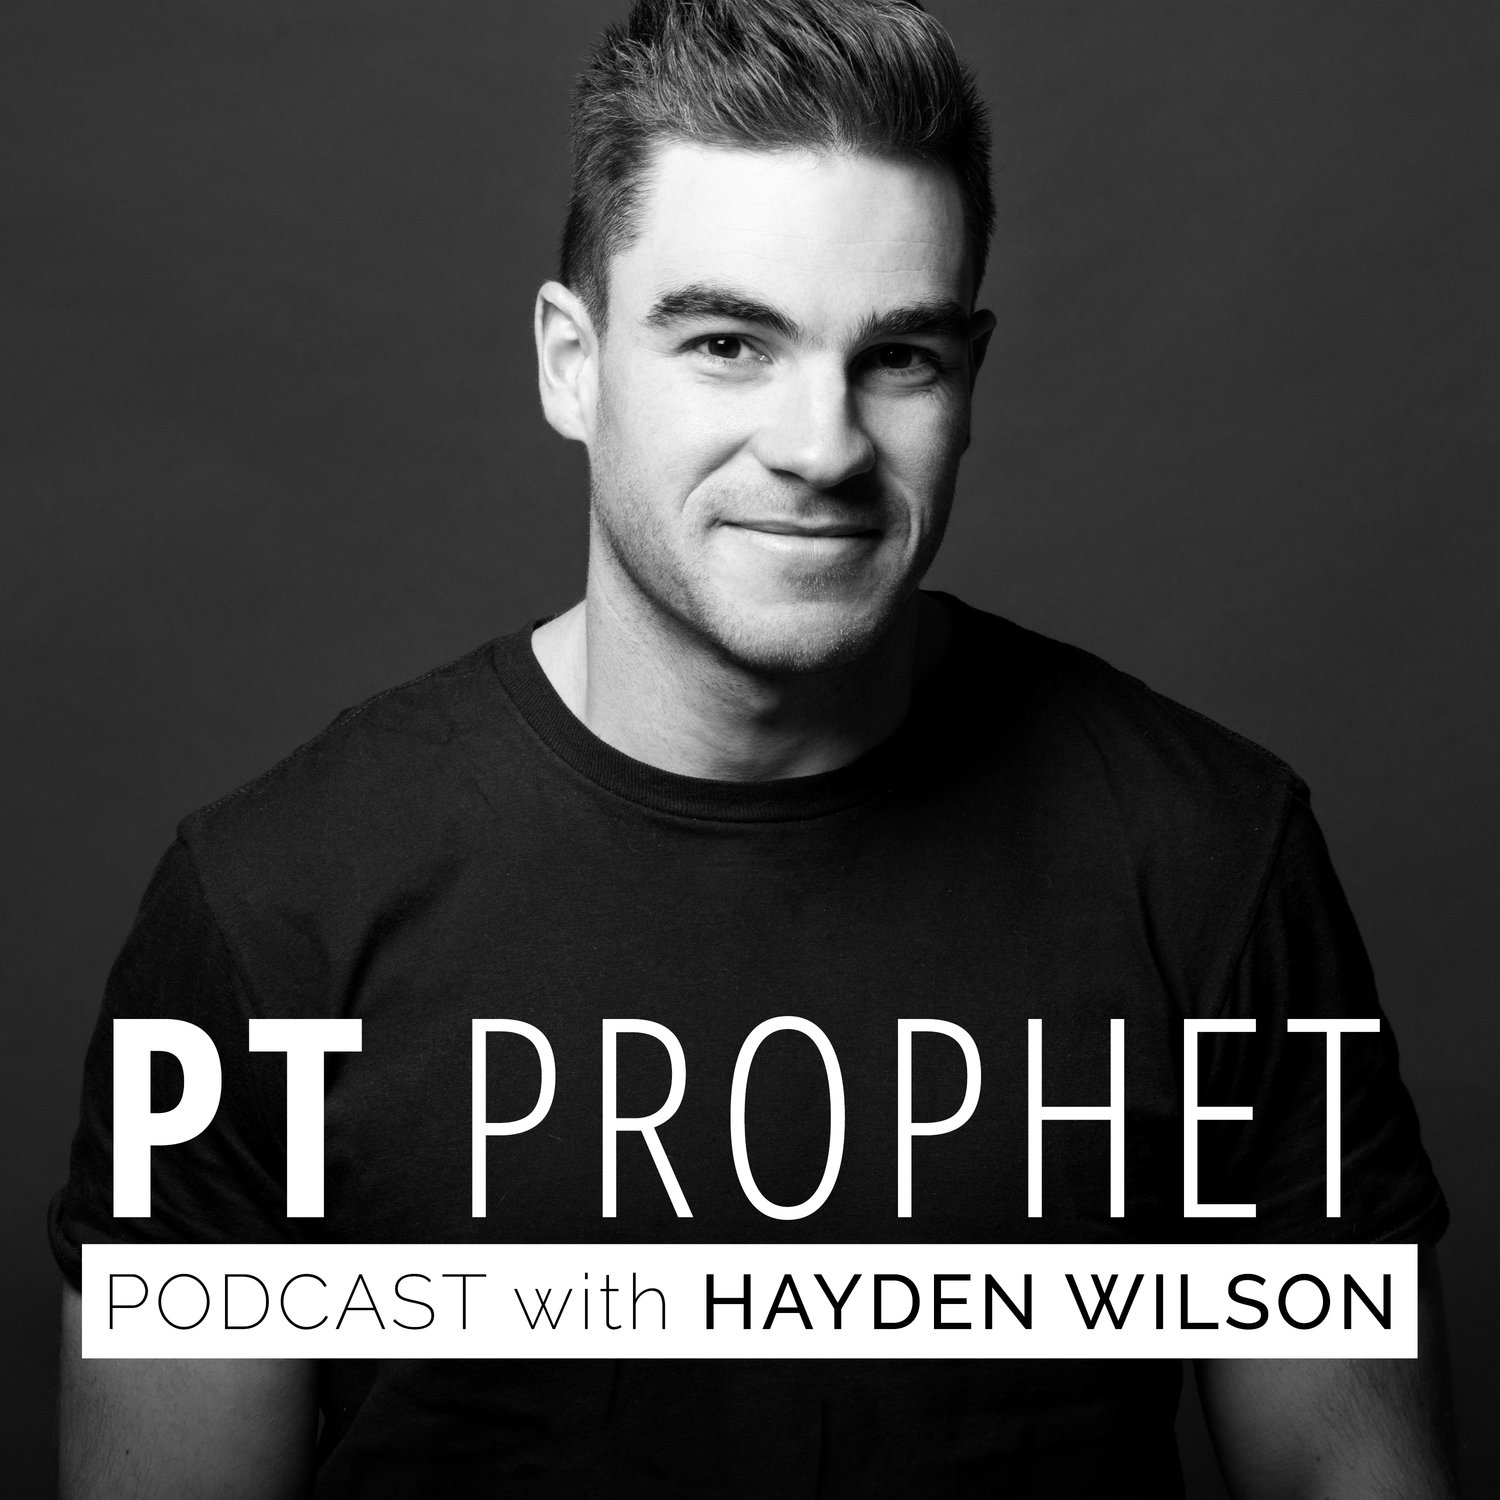 Pt Prophet Podcast with High Performance Coach Hayden Wilson